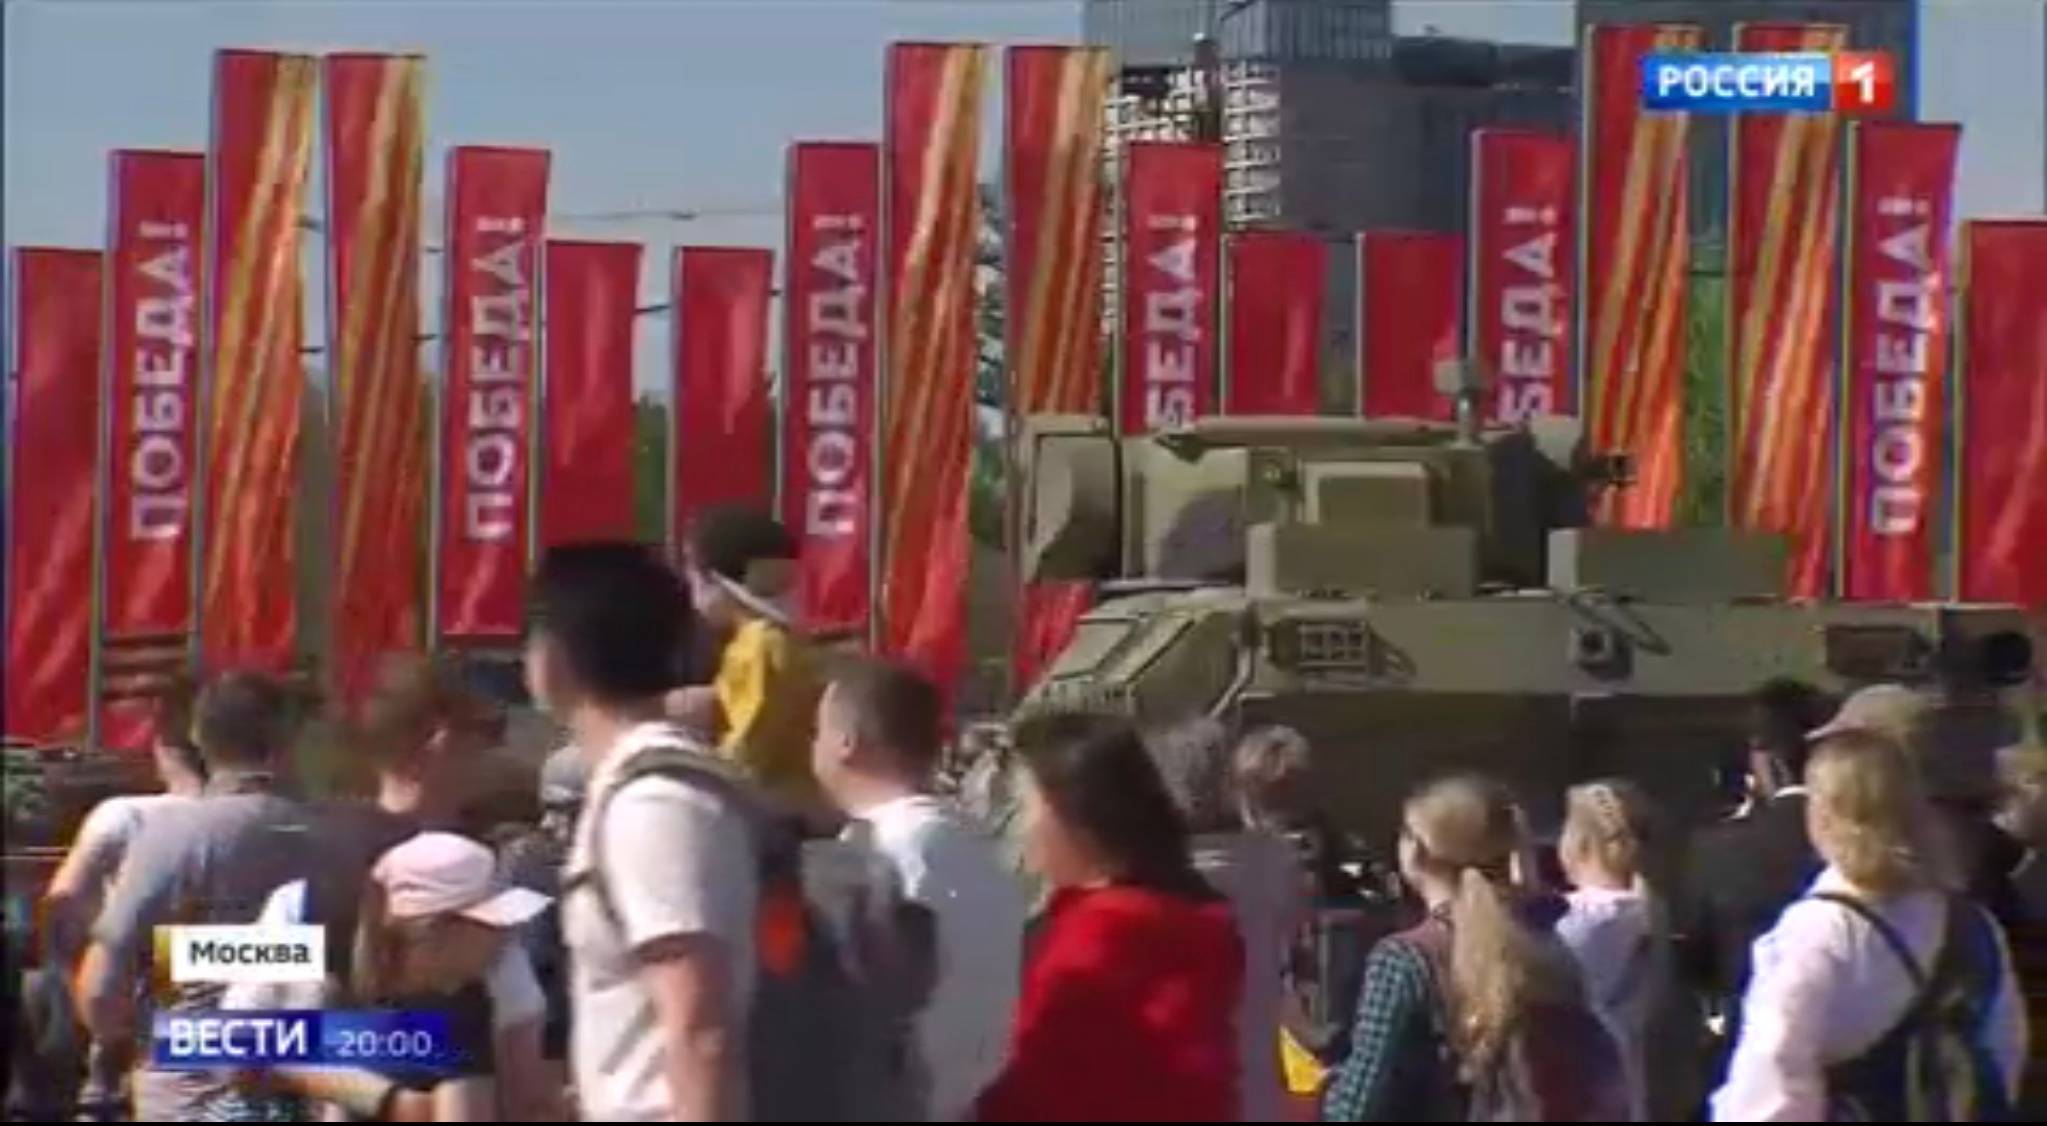 Ludzie oglądają sprzęt wojskowy, w tle - czerwone flagi z rosyjskim napisem 'zwycięstwo"